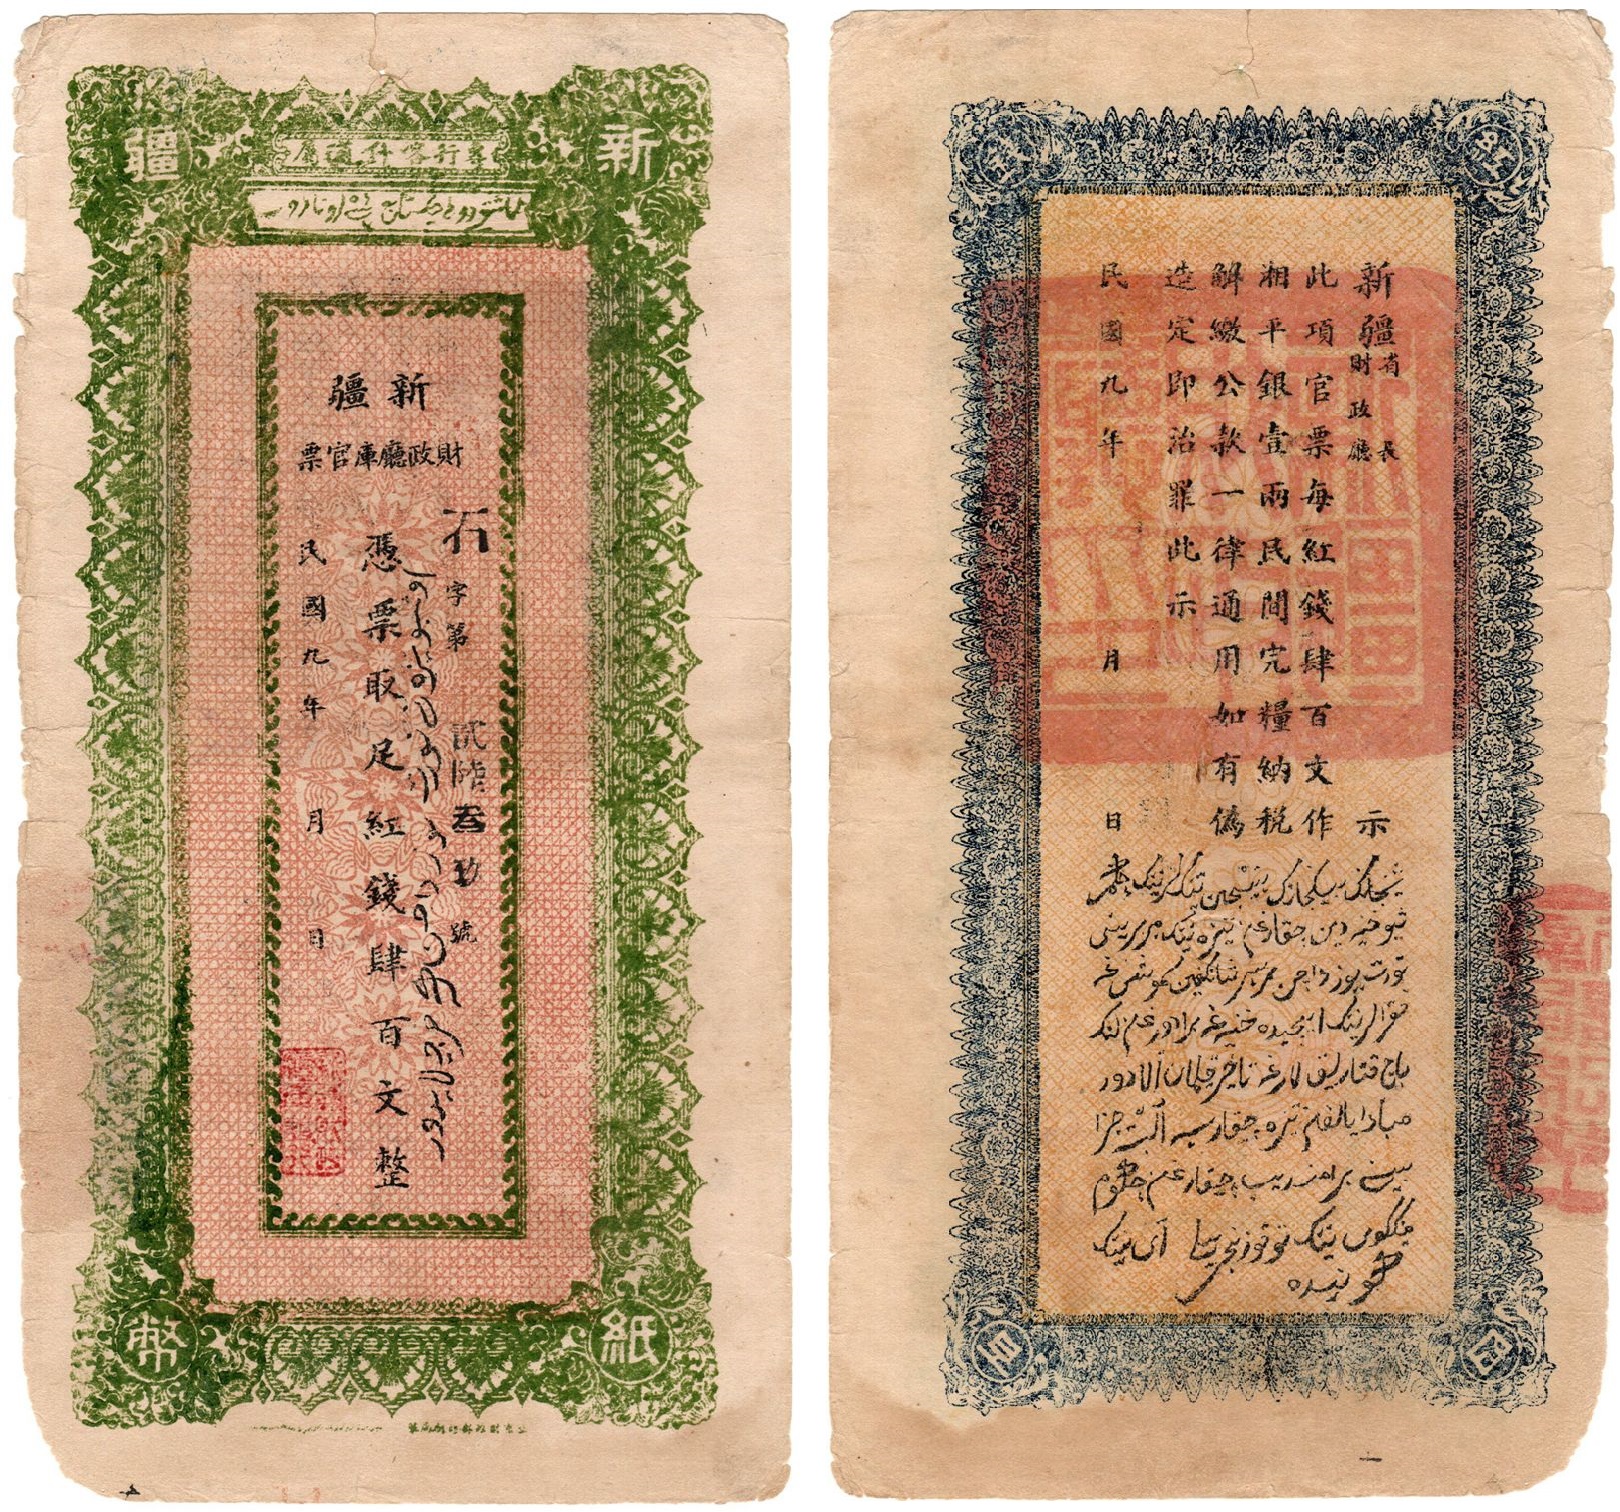 XJ0092, Sinkiang Treasury (Kashgar) Banknote 400 Cash, 1920 Sinkiang Print